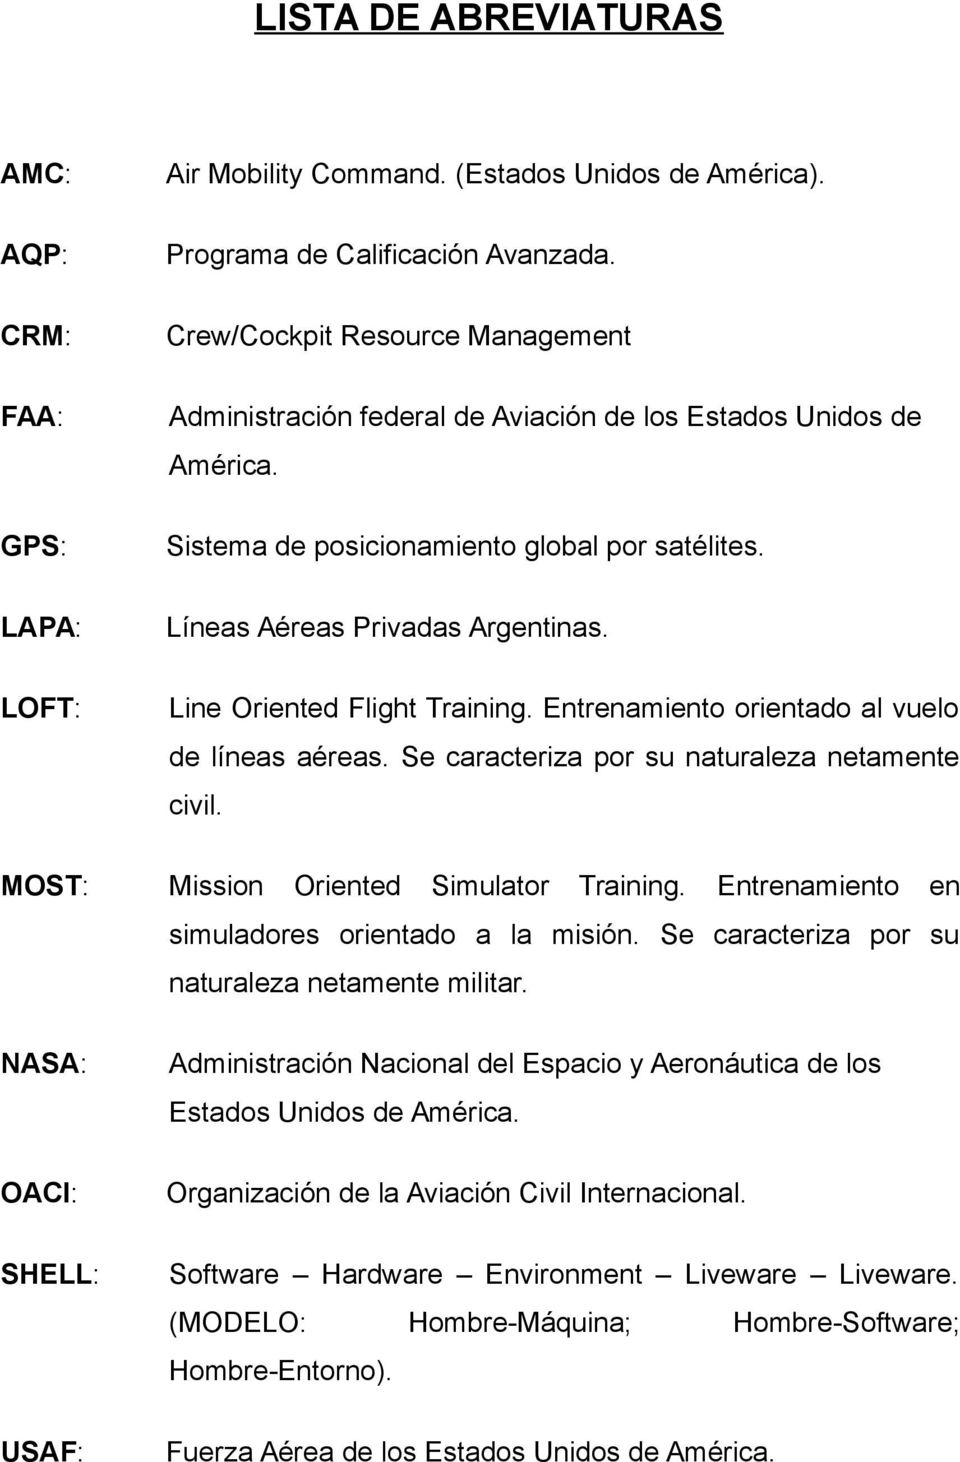 Line Oriented Flight Training. Entrenamiento orientado al vuelo de líneas aéreas. Se caracteriza por su naturaleza netamente civil. MOST: Mission Oriented Simulator Training.